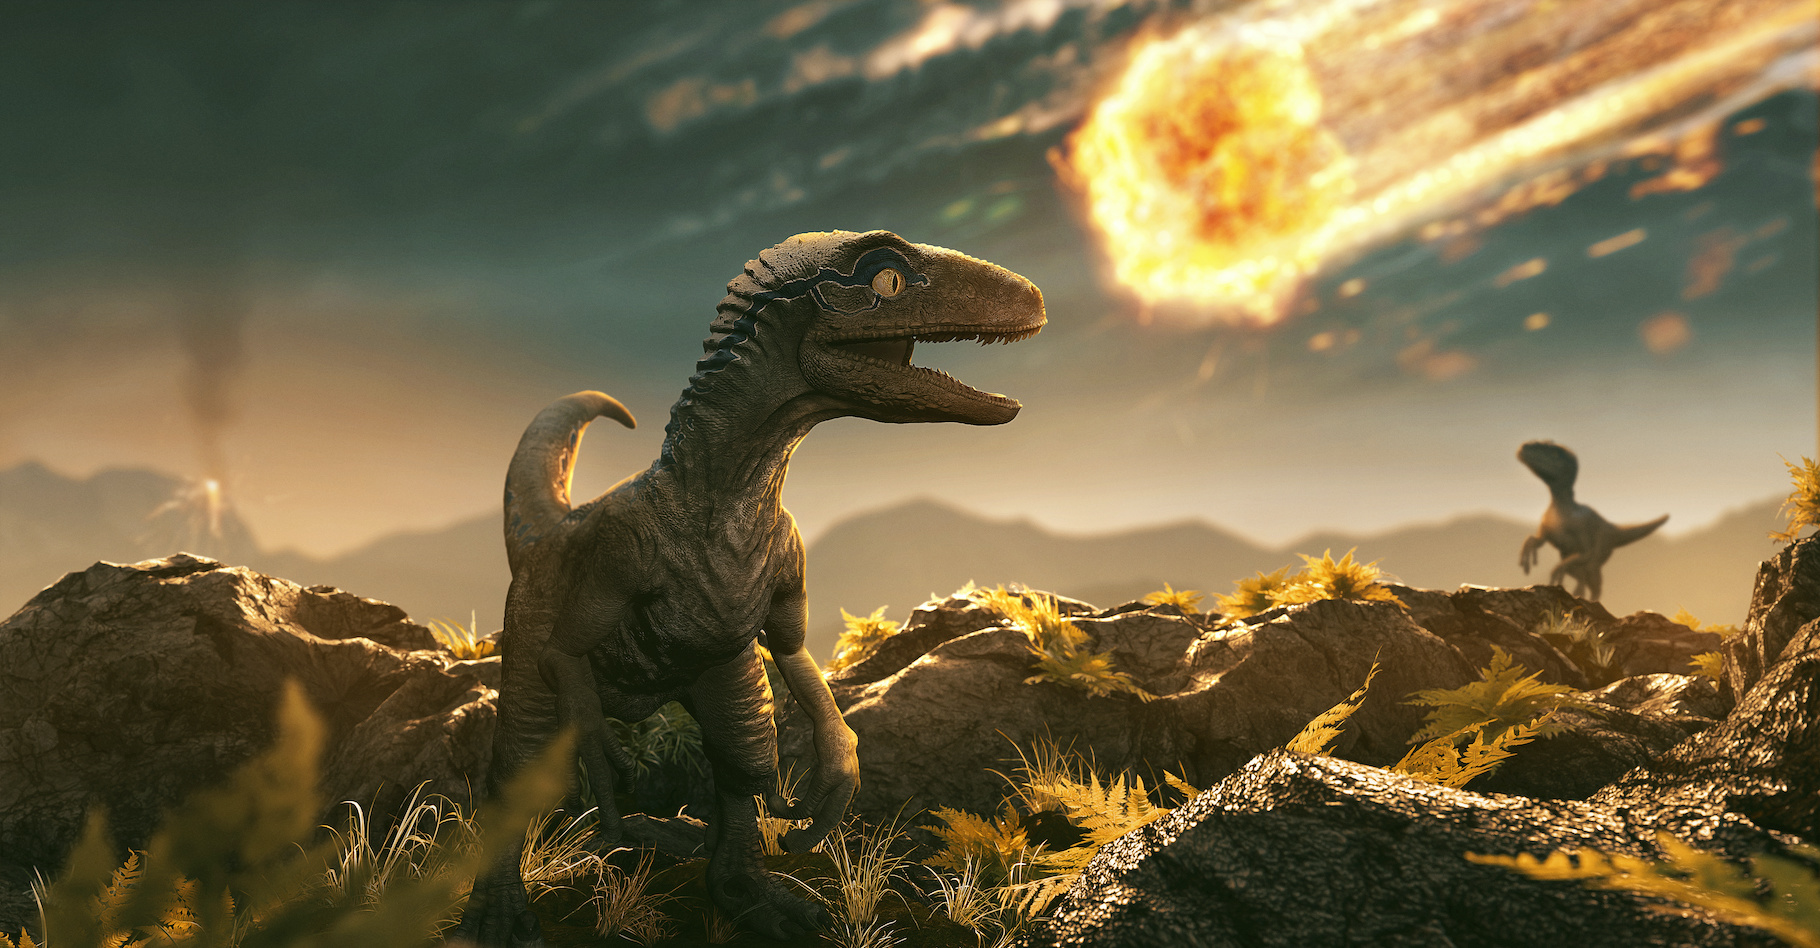 Illustration du cataclysme qui a provoqué l'extinction des dinosaures il y a 66 millions d'années. © lassedesign, Adobe Stock